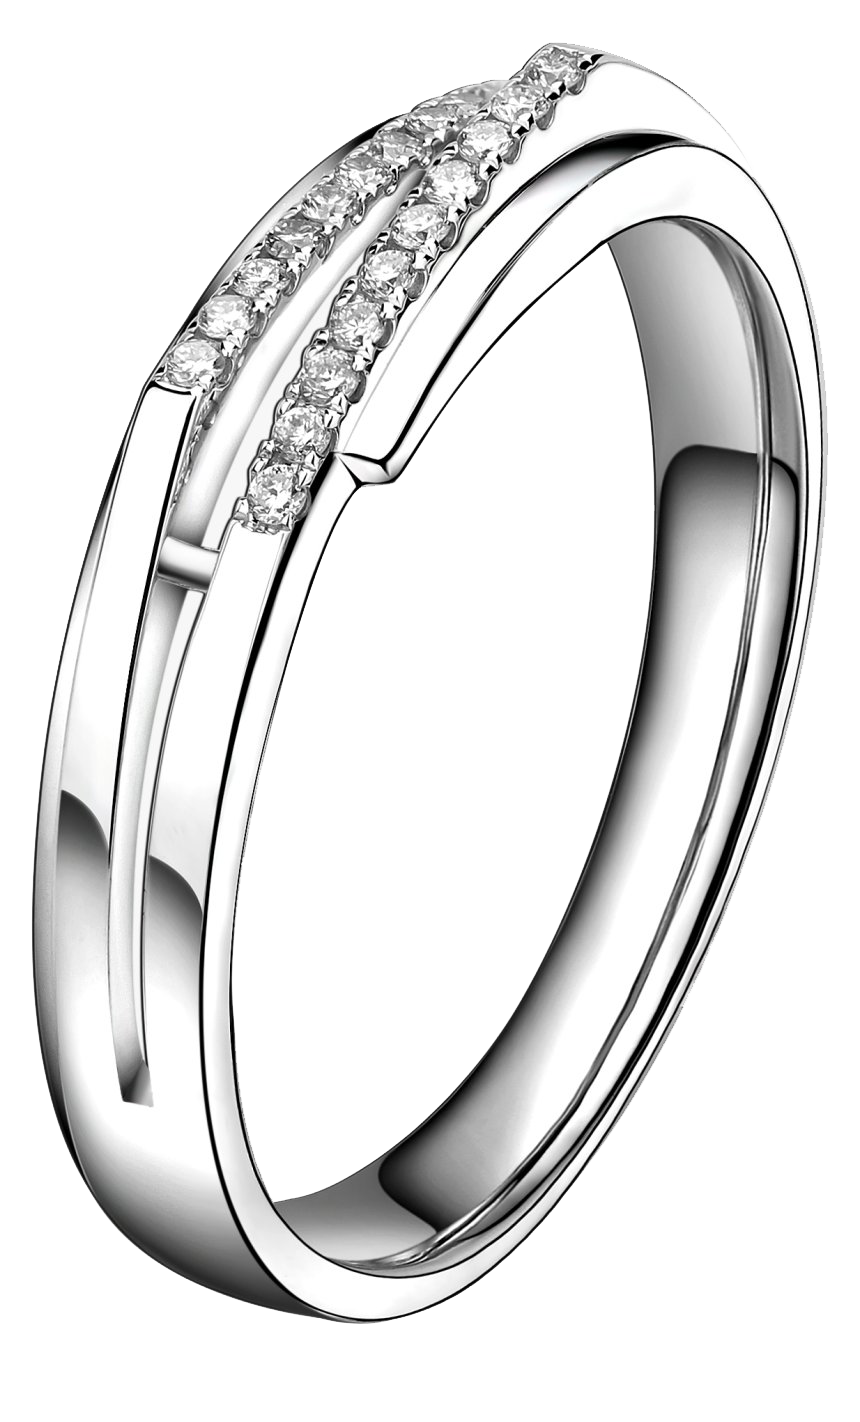 Свадебное серебряное кольцо PNG изображения фон